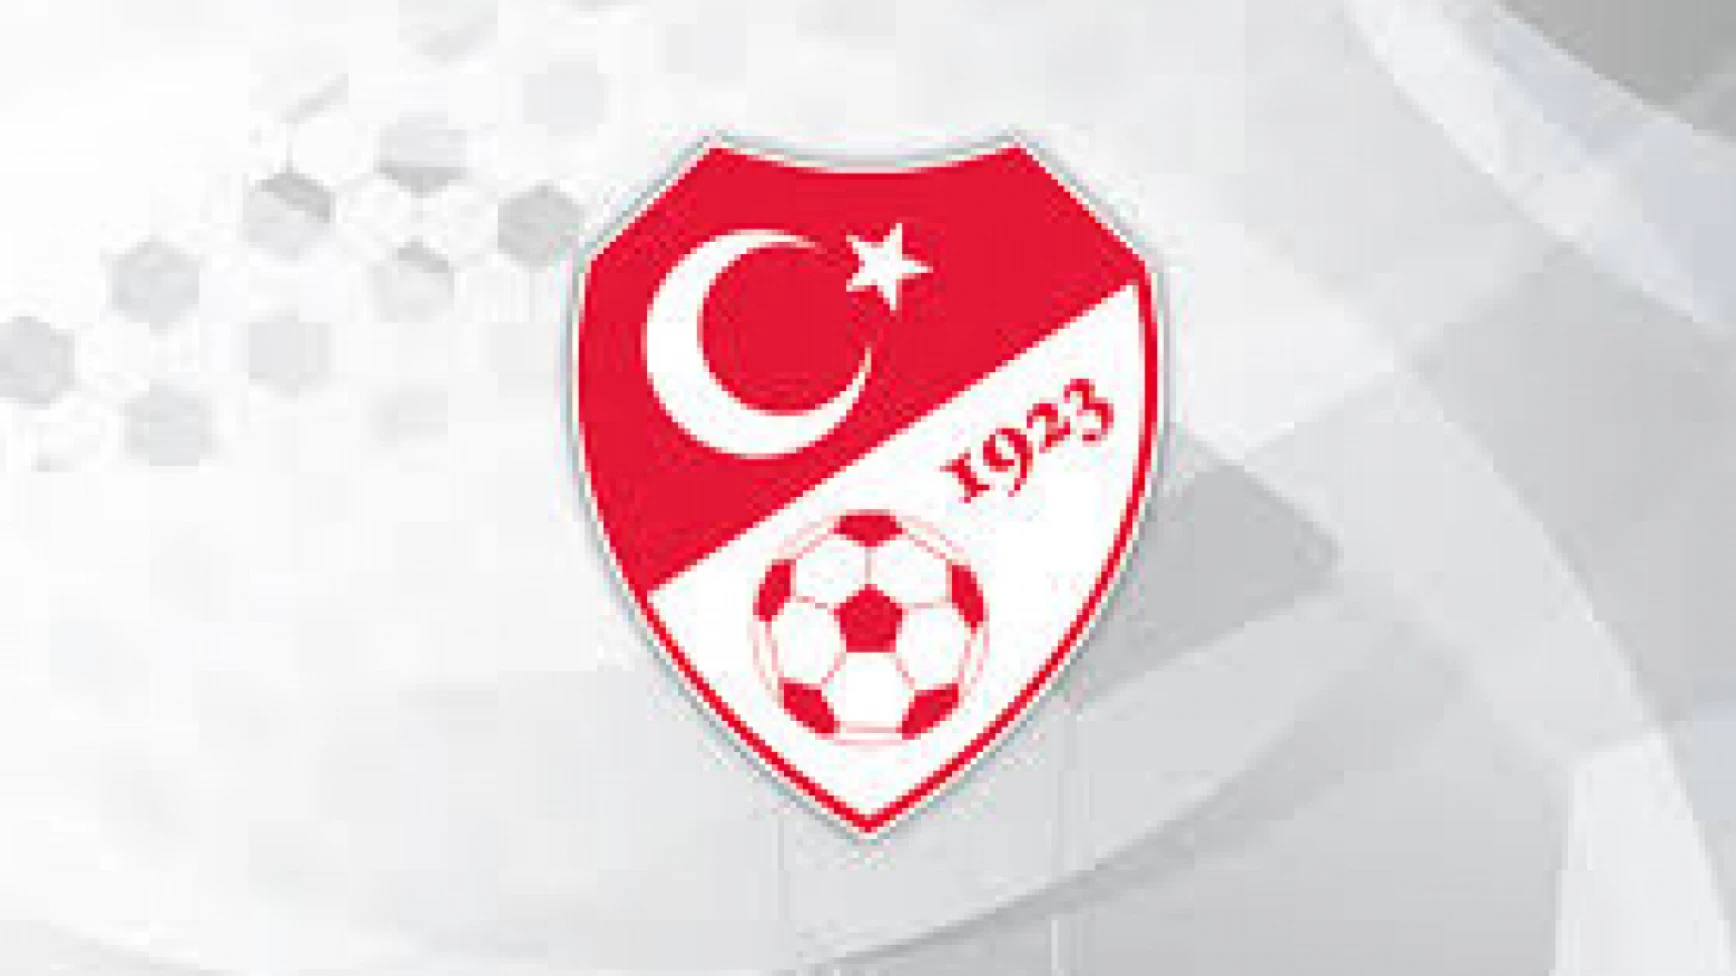 UEFA Regions Cup Bölge Karmaları Türkiye Birinciliği Turnuvası Erzurum'da düzenlenecek